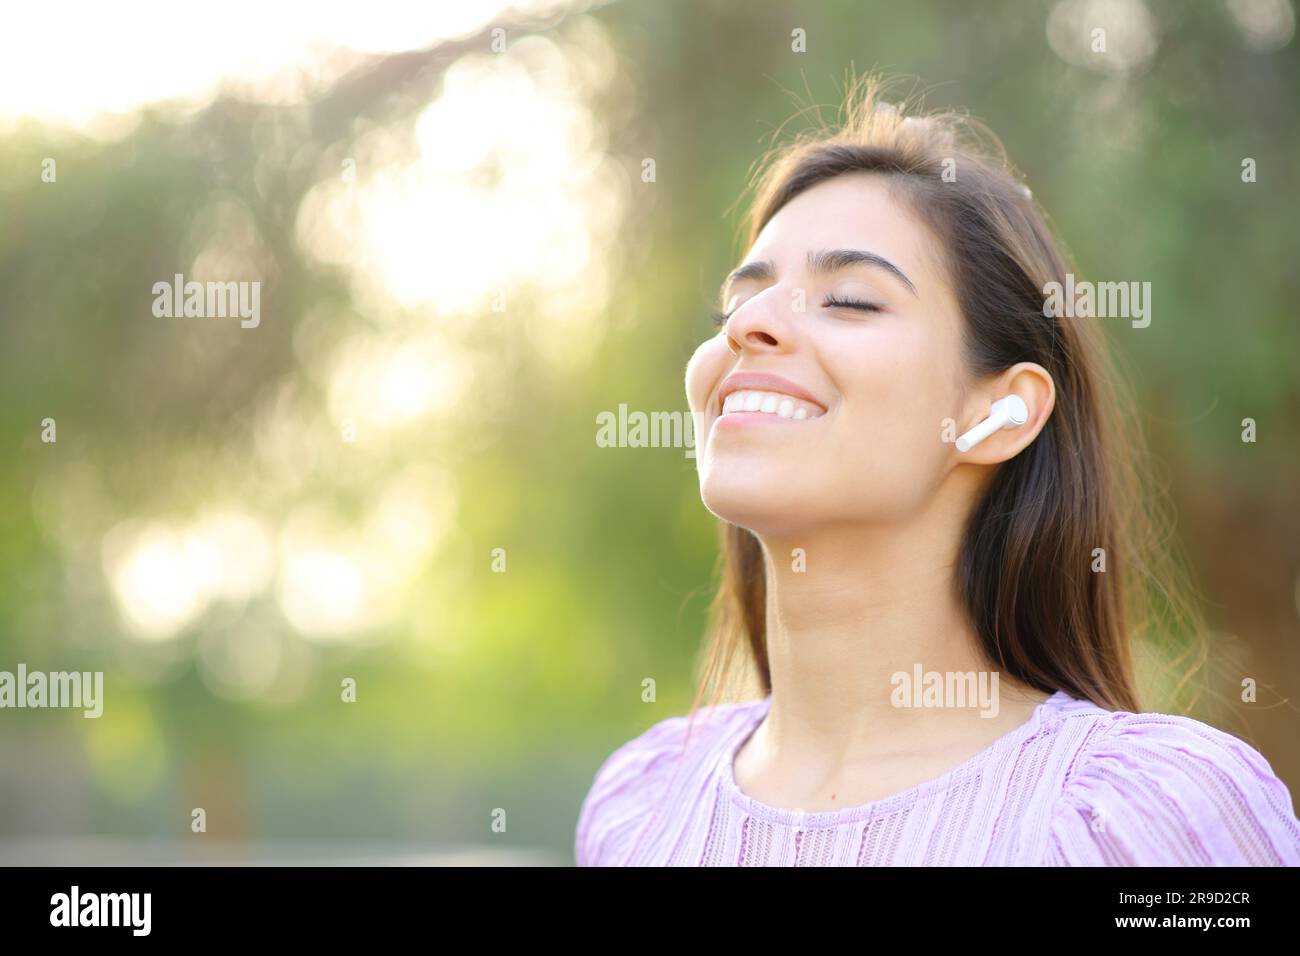 Glückliche Frau, die frische Luft atmet und Ohrstöpsel in einem grünen Park trägt Stockfoto